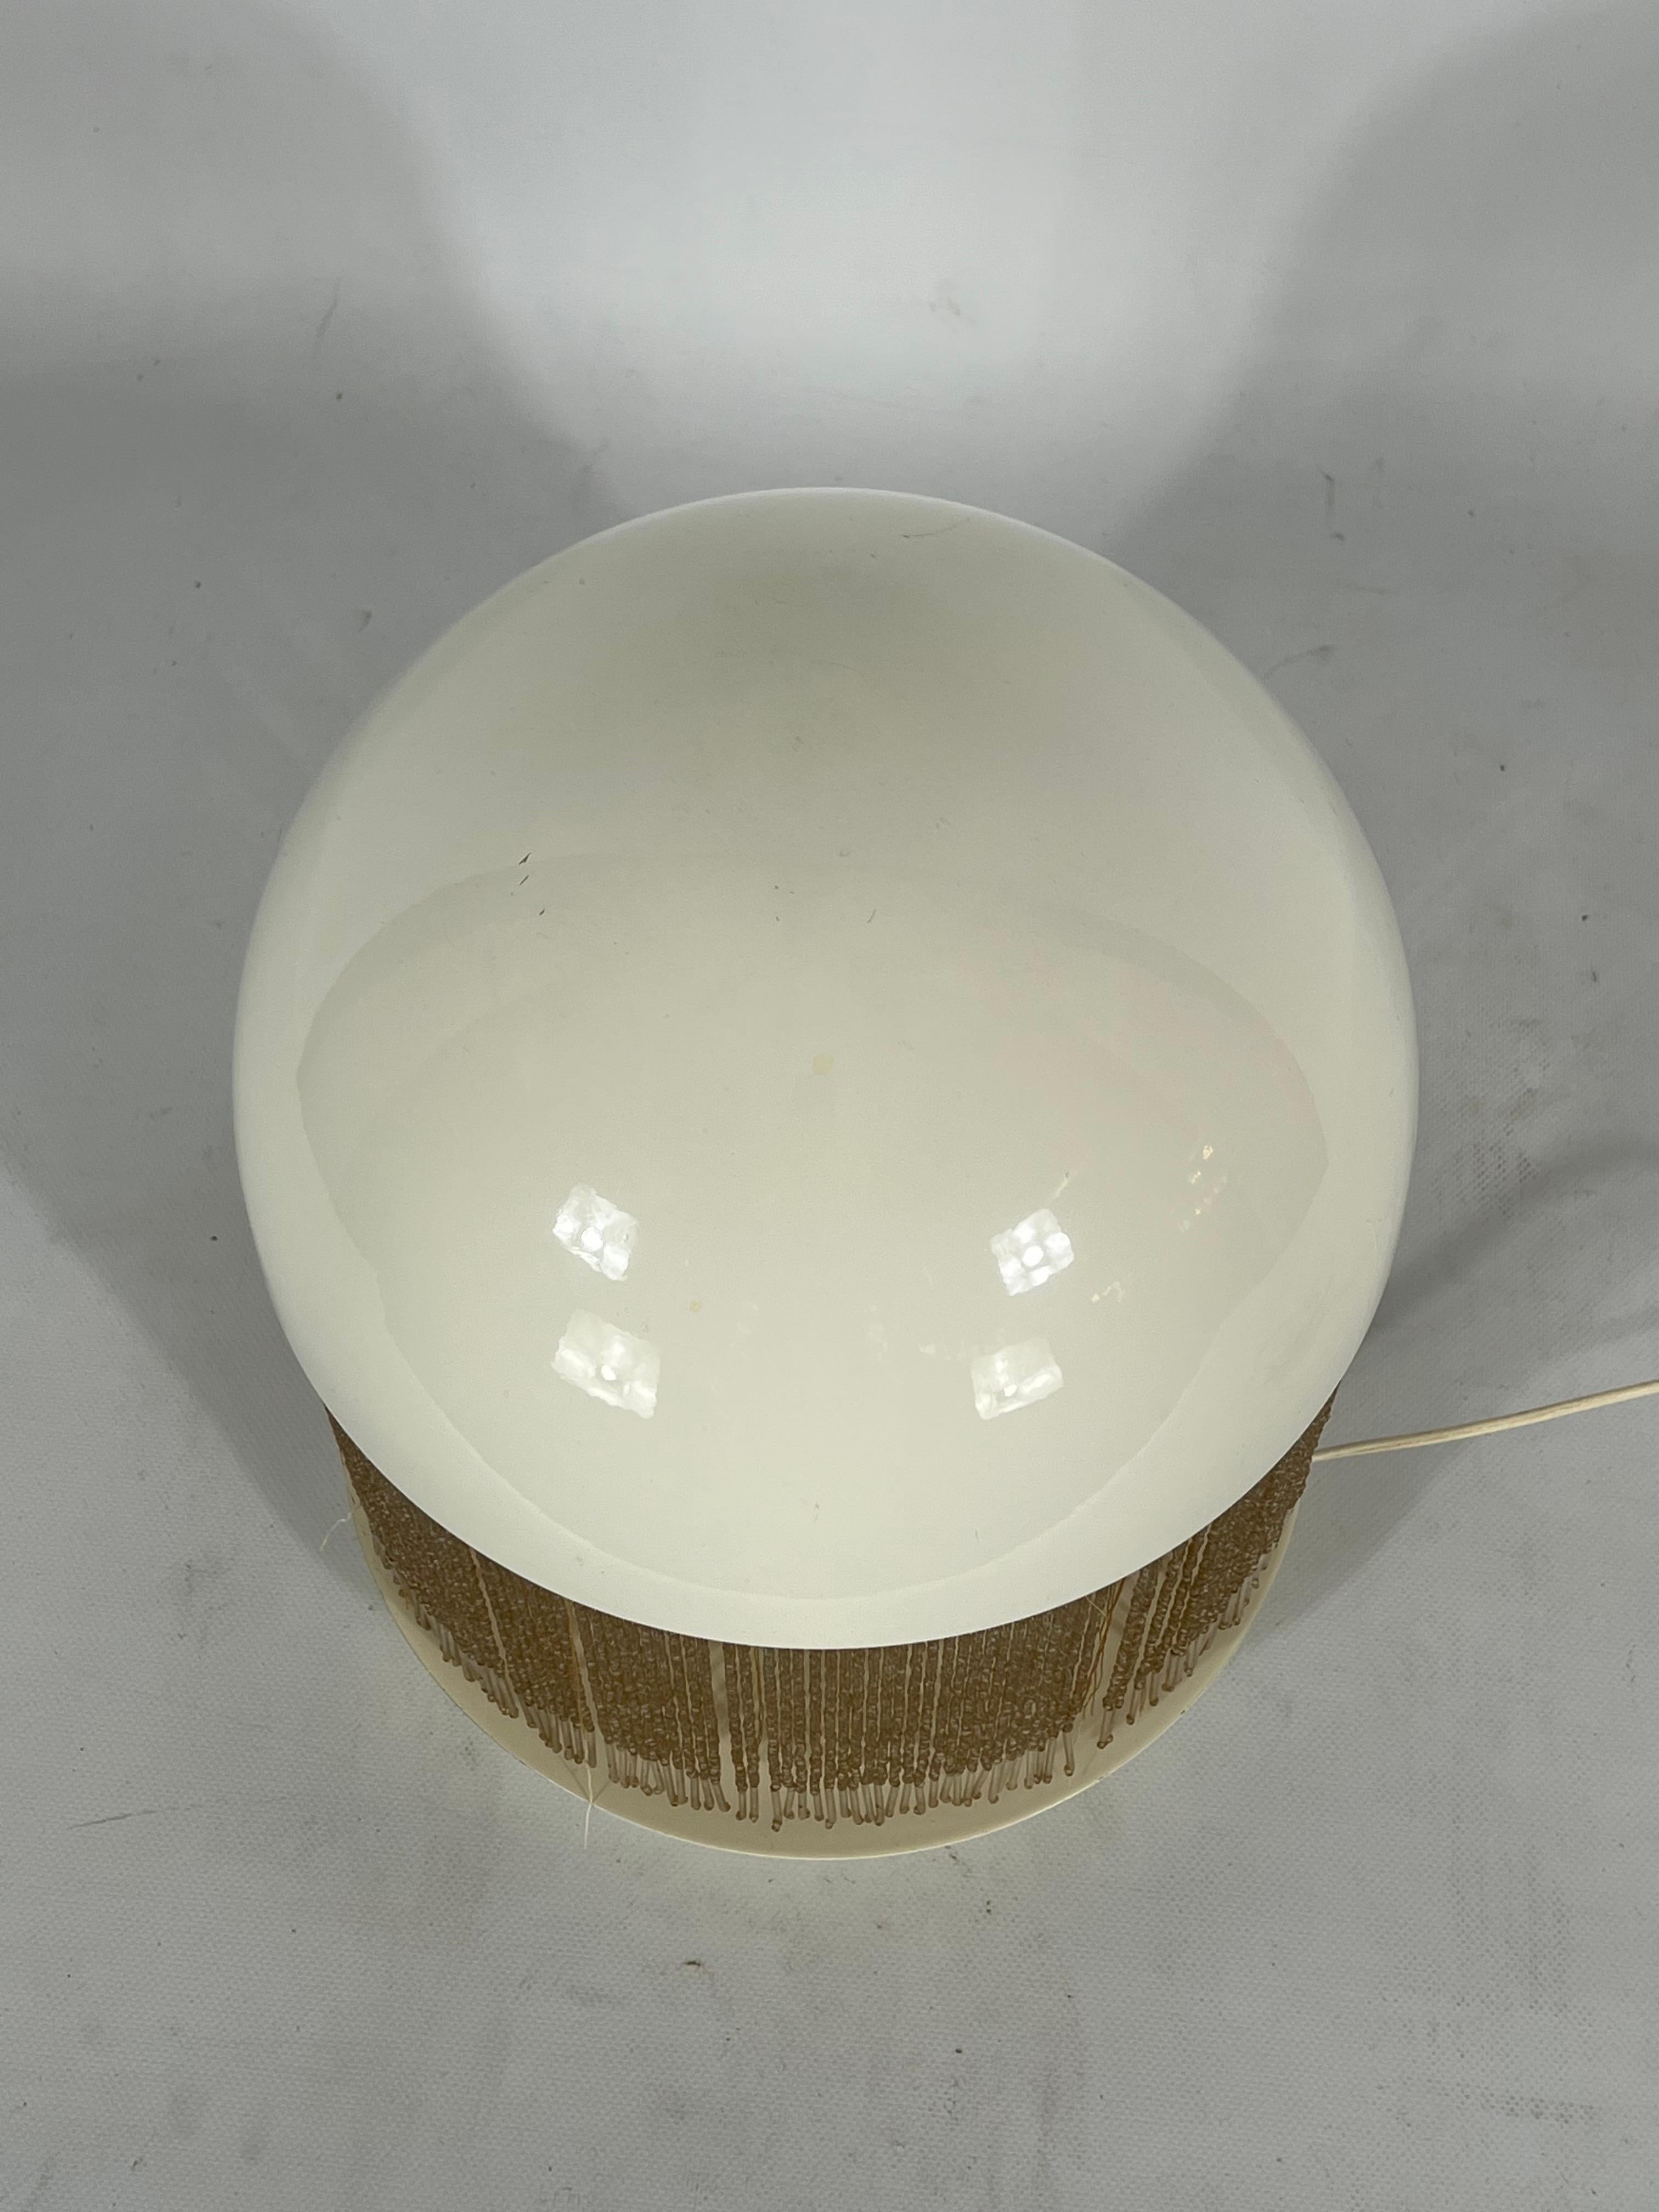 Rare Italian Modern Otero Table Lamp by Giuliana Gramigna for Quattrifolio, 1979 For Sale 5